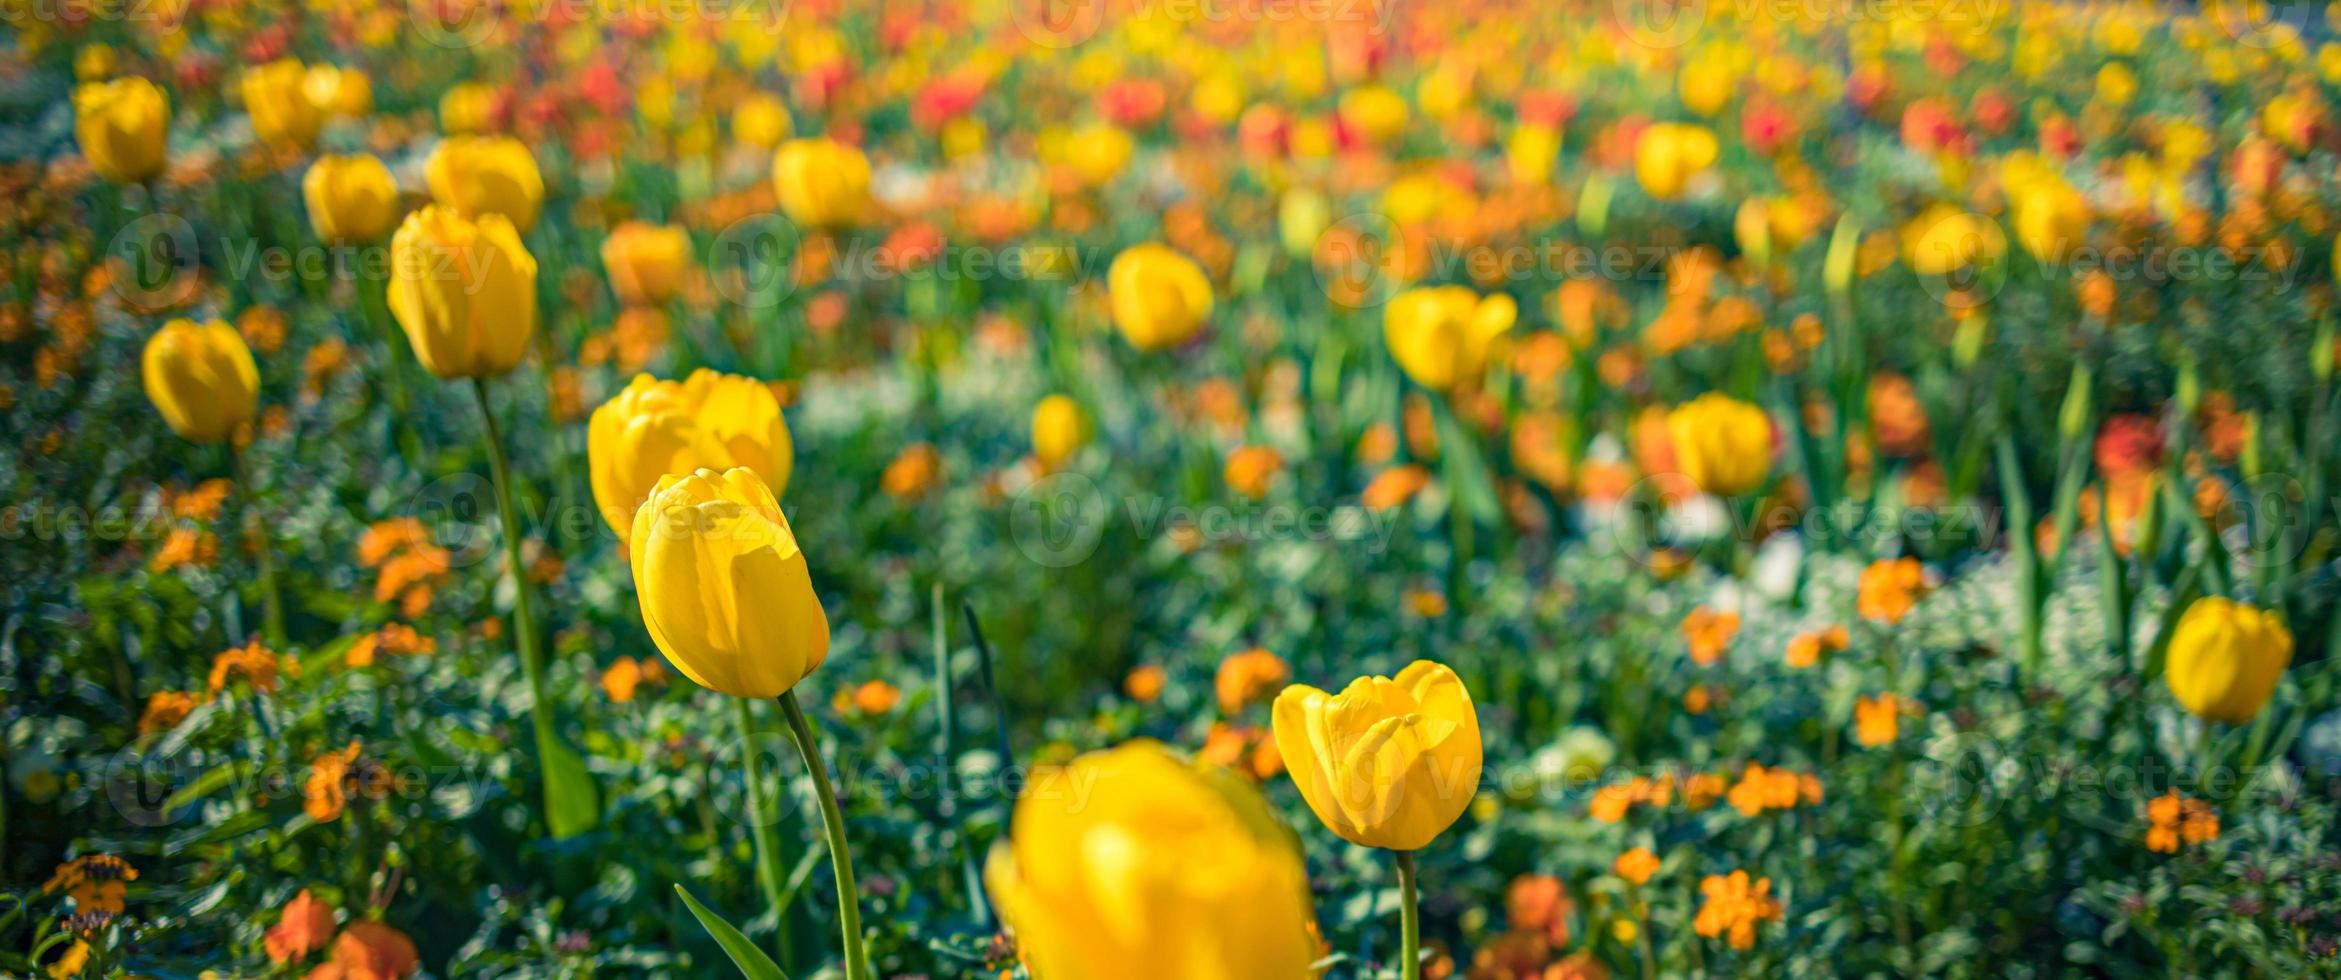 fundo de primavera com lindas tulipas amarelas. bandeira floral do parque do jardim da cidade. primavera florescendo tulipas amarelas, fundo de flores bokeh, cartão floral pastel e suave, foco seletivo, tonificado foto